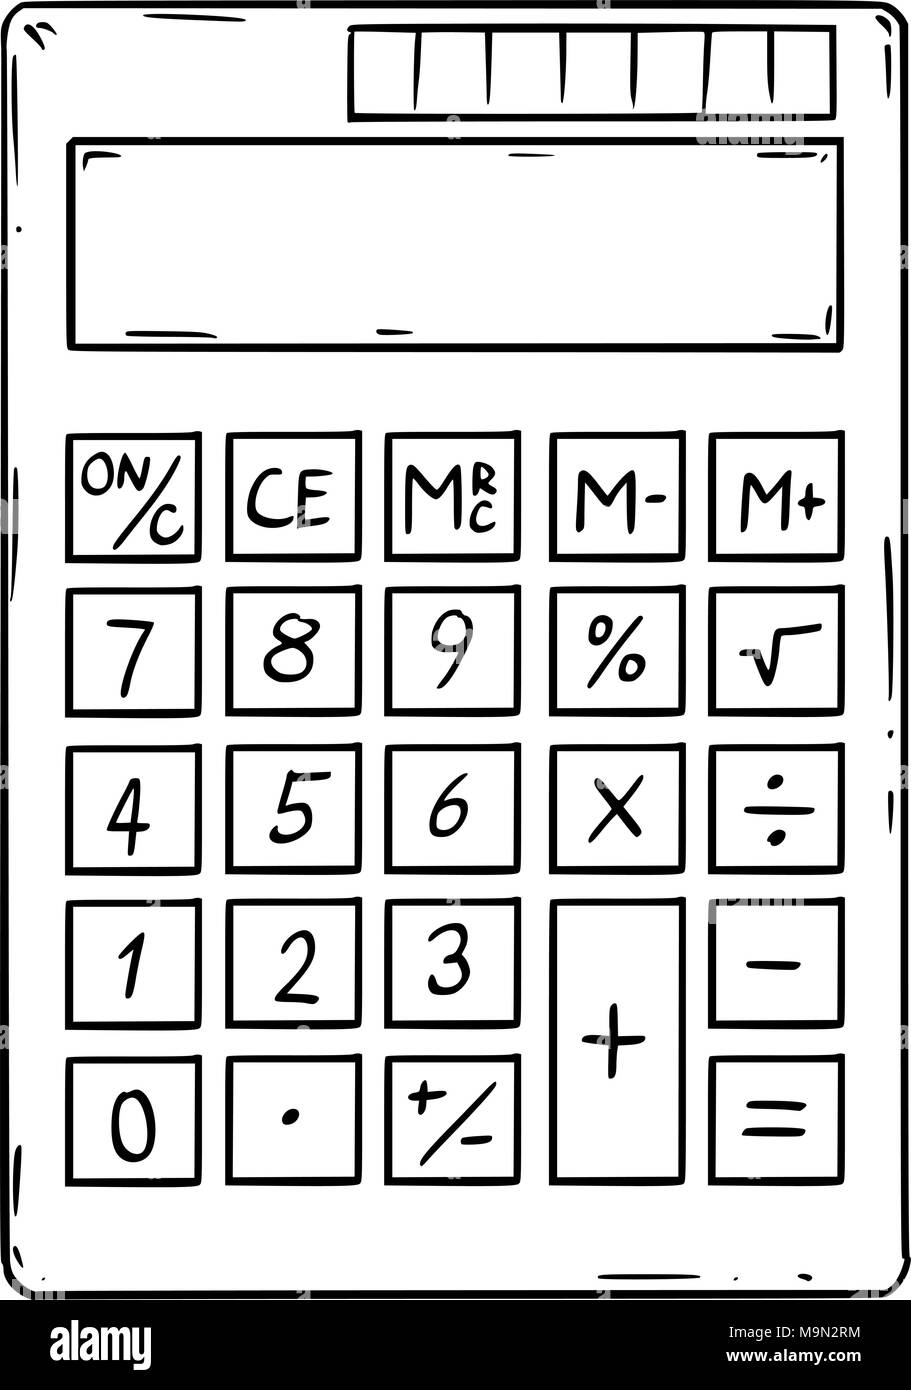 Caricature de calculatrice électronique avec affichage vide Illustration de Vecteur